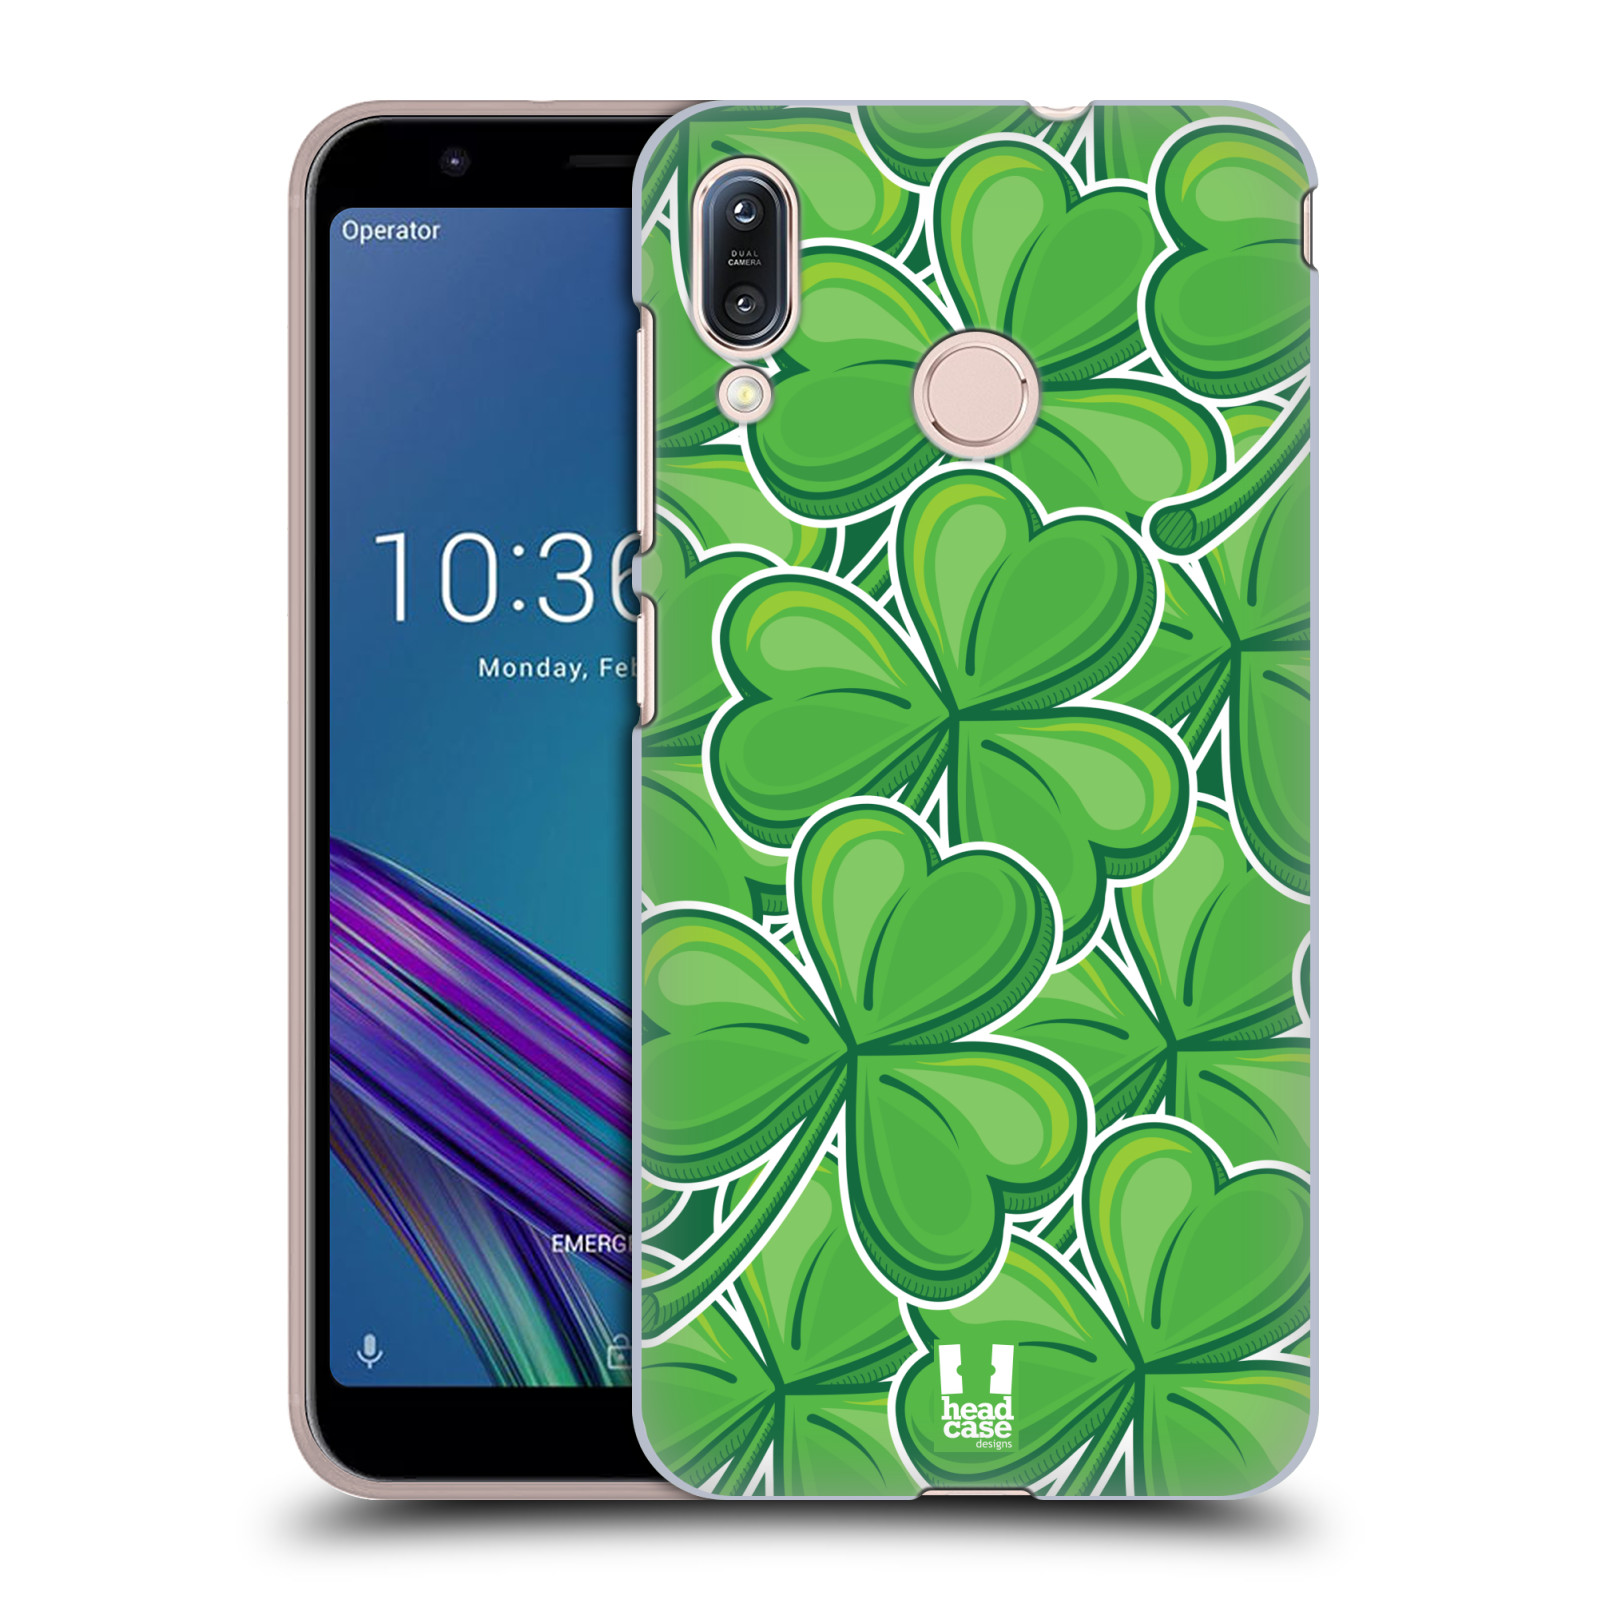 Pouzdro na mobil Asus Zenfone Max M1 (ZB555KL) - HEAD CASE - vzor Kreslený čyřlístek zelená VELKÉ LÍSTEČKY